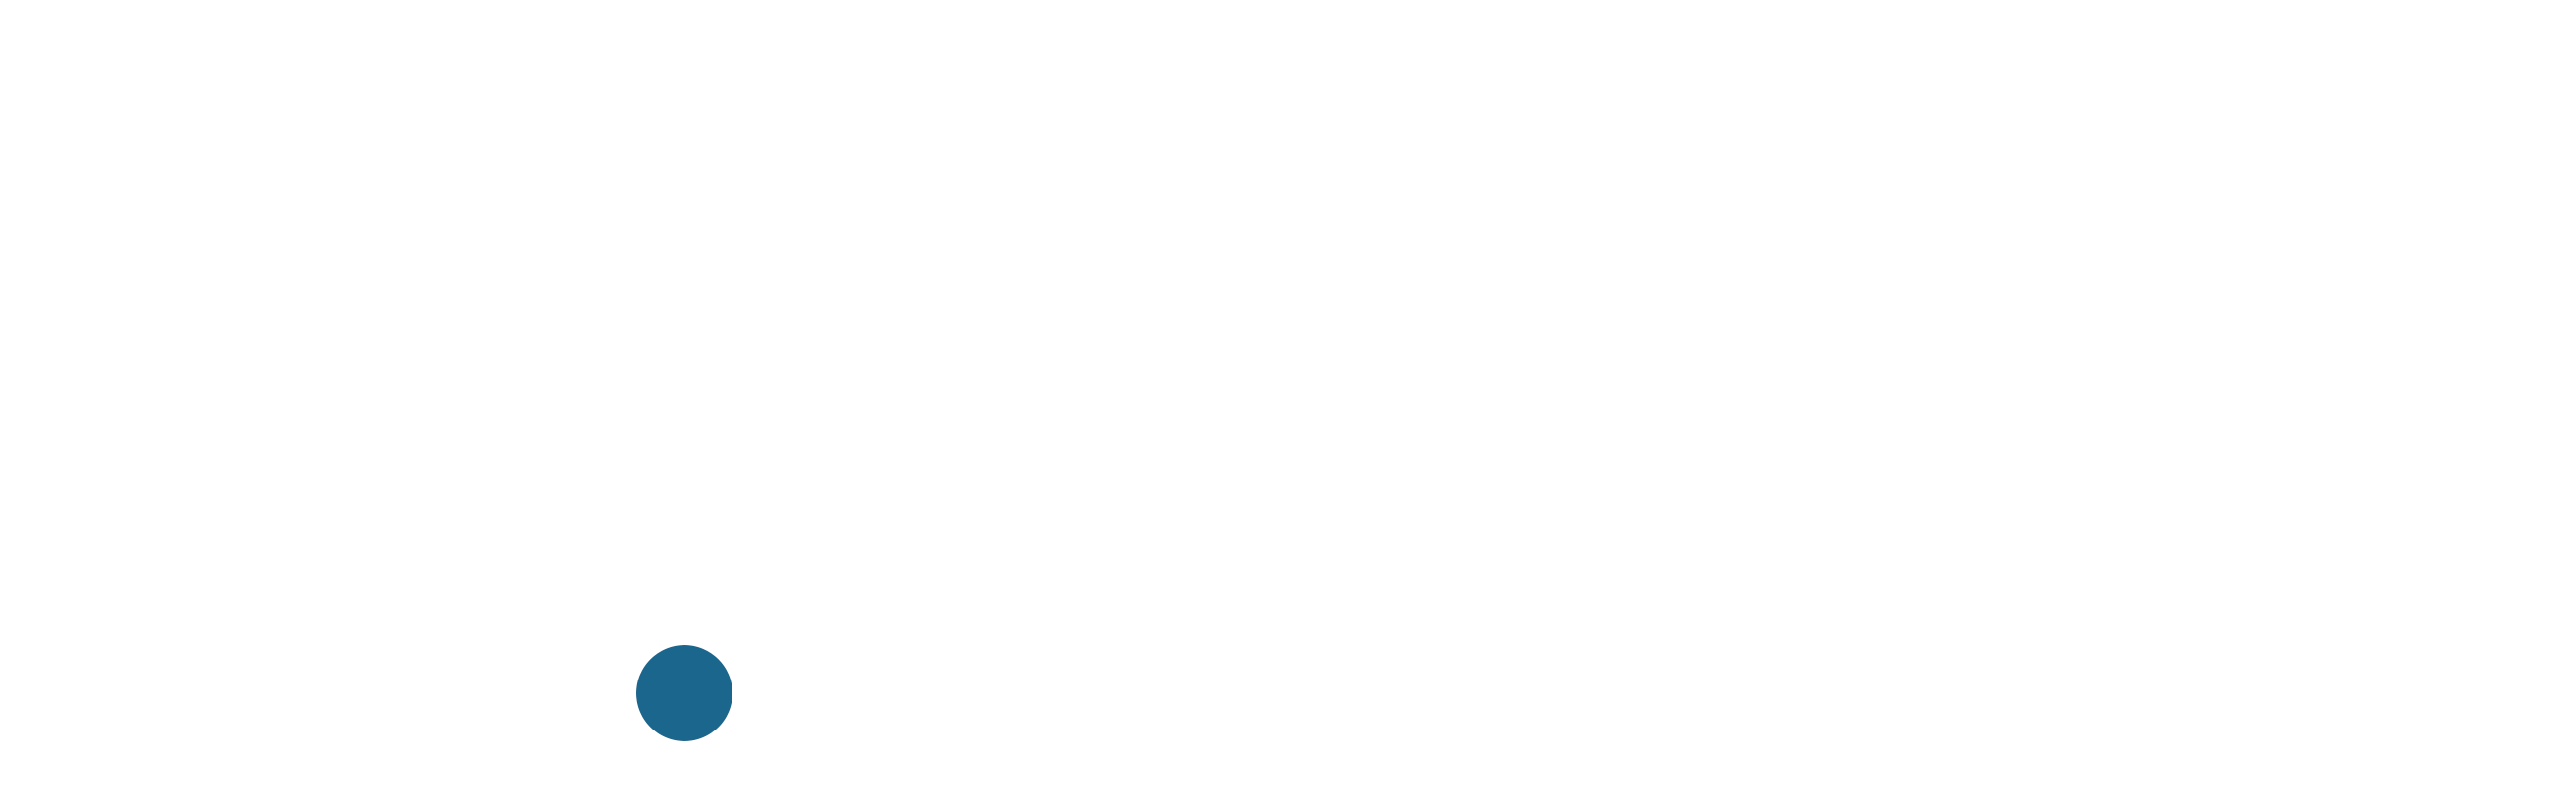 Hotel Expert Logo in White